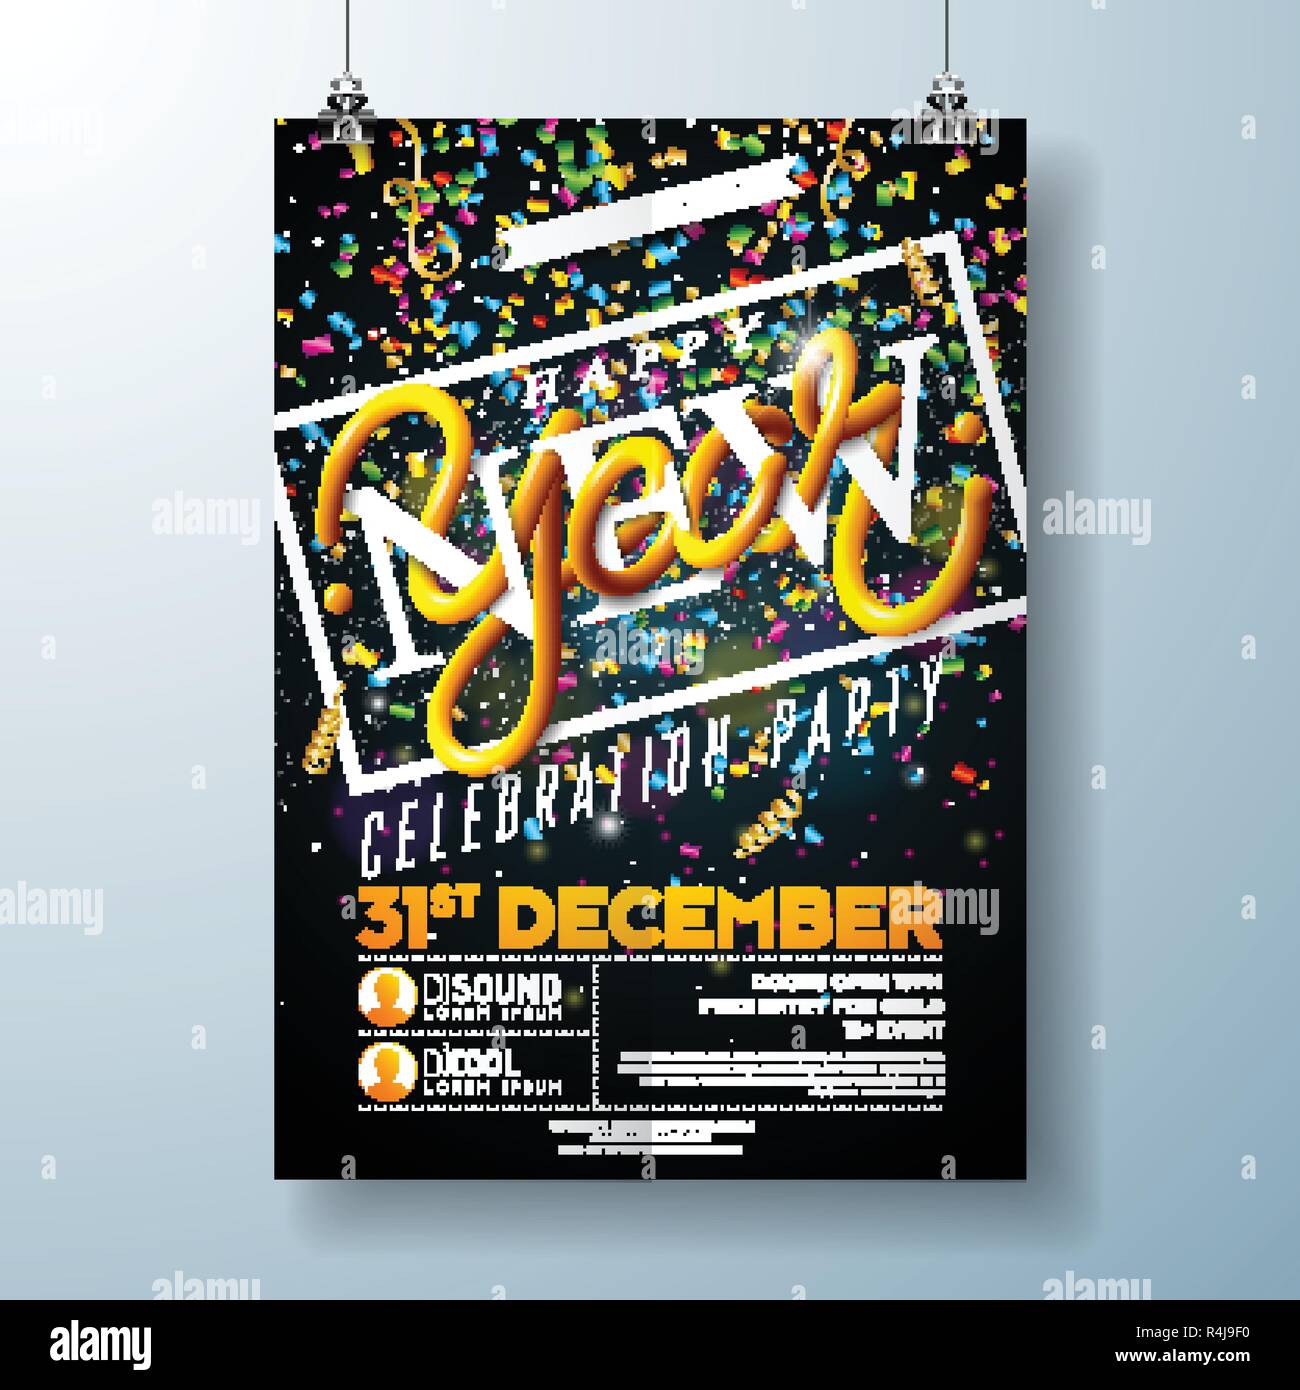 Happy New Year Party Celebration Flyer modello Illustrazione con Typography Design e Falling Confetti su sfondo nero. Vector Holiday Premium Illustrazione Vettoriale